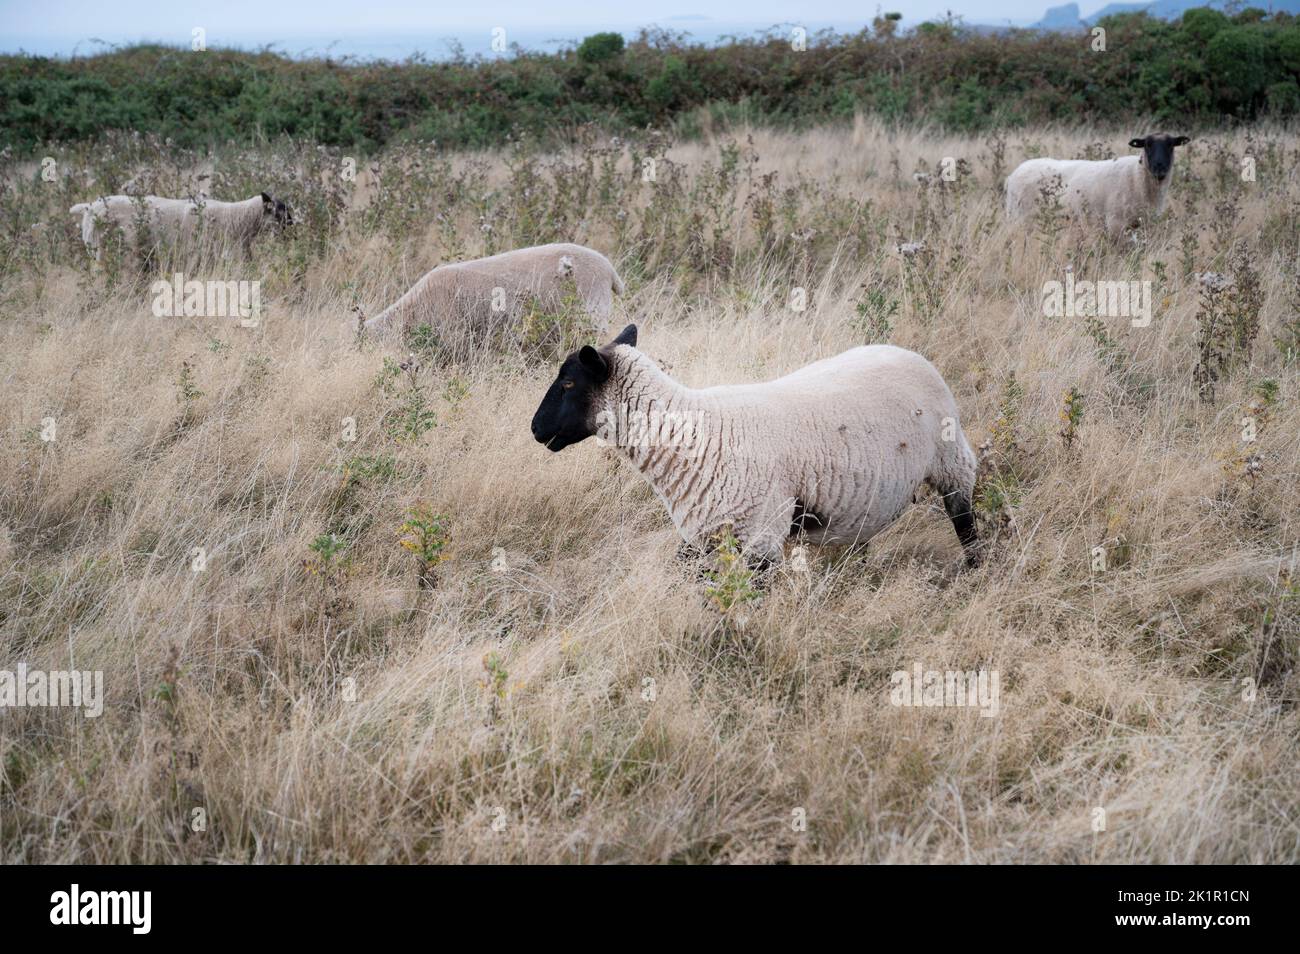 Pays de Galles, Pembrokeshire. Près de Dale. Les plantes ont séché après la vague de chaleur et le manque de pluie en juillet 2022 et les moutons. Banque D'Images